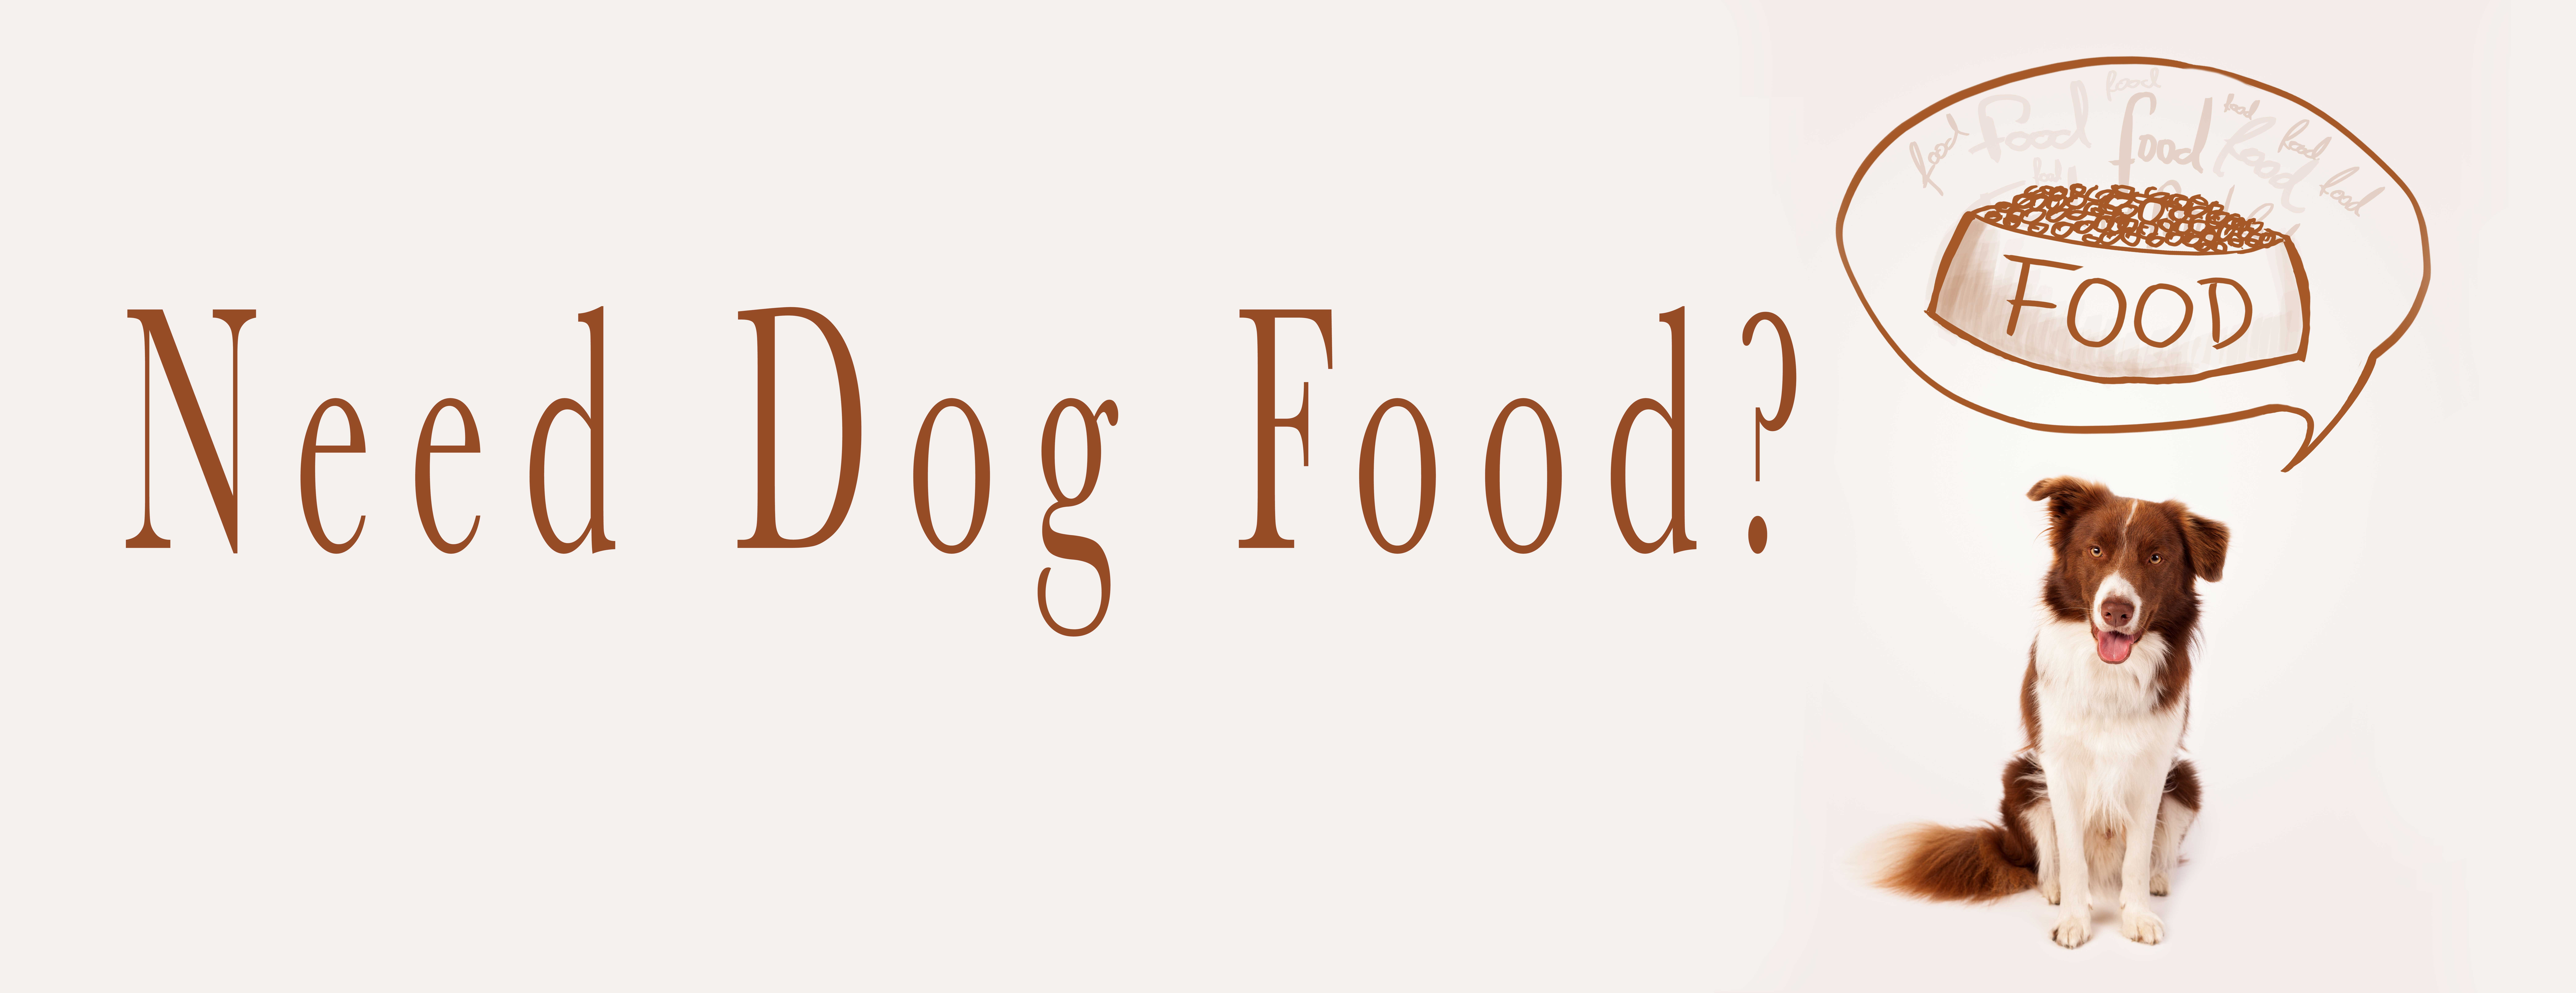 Need Dog Food